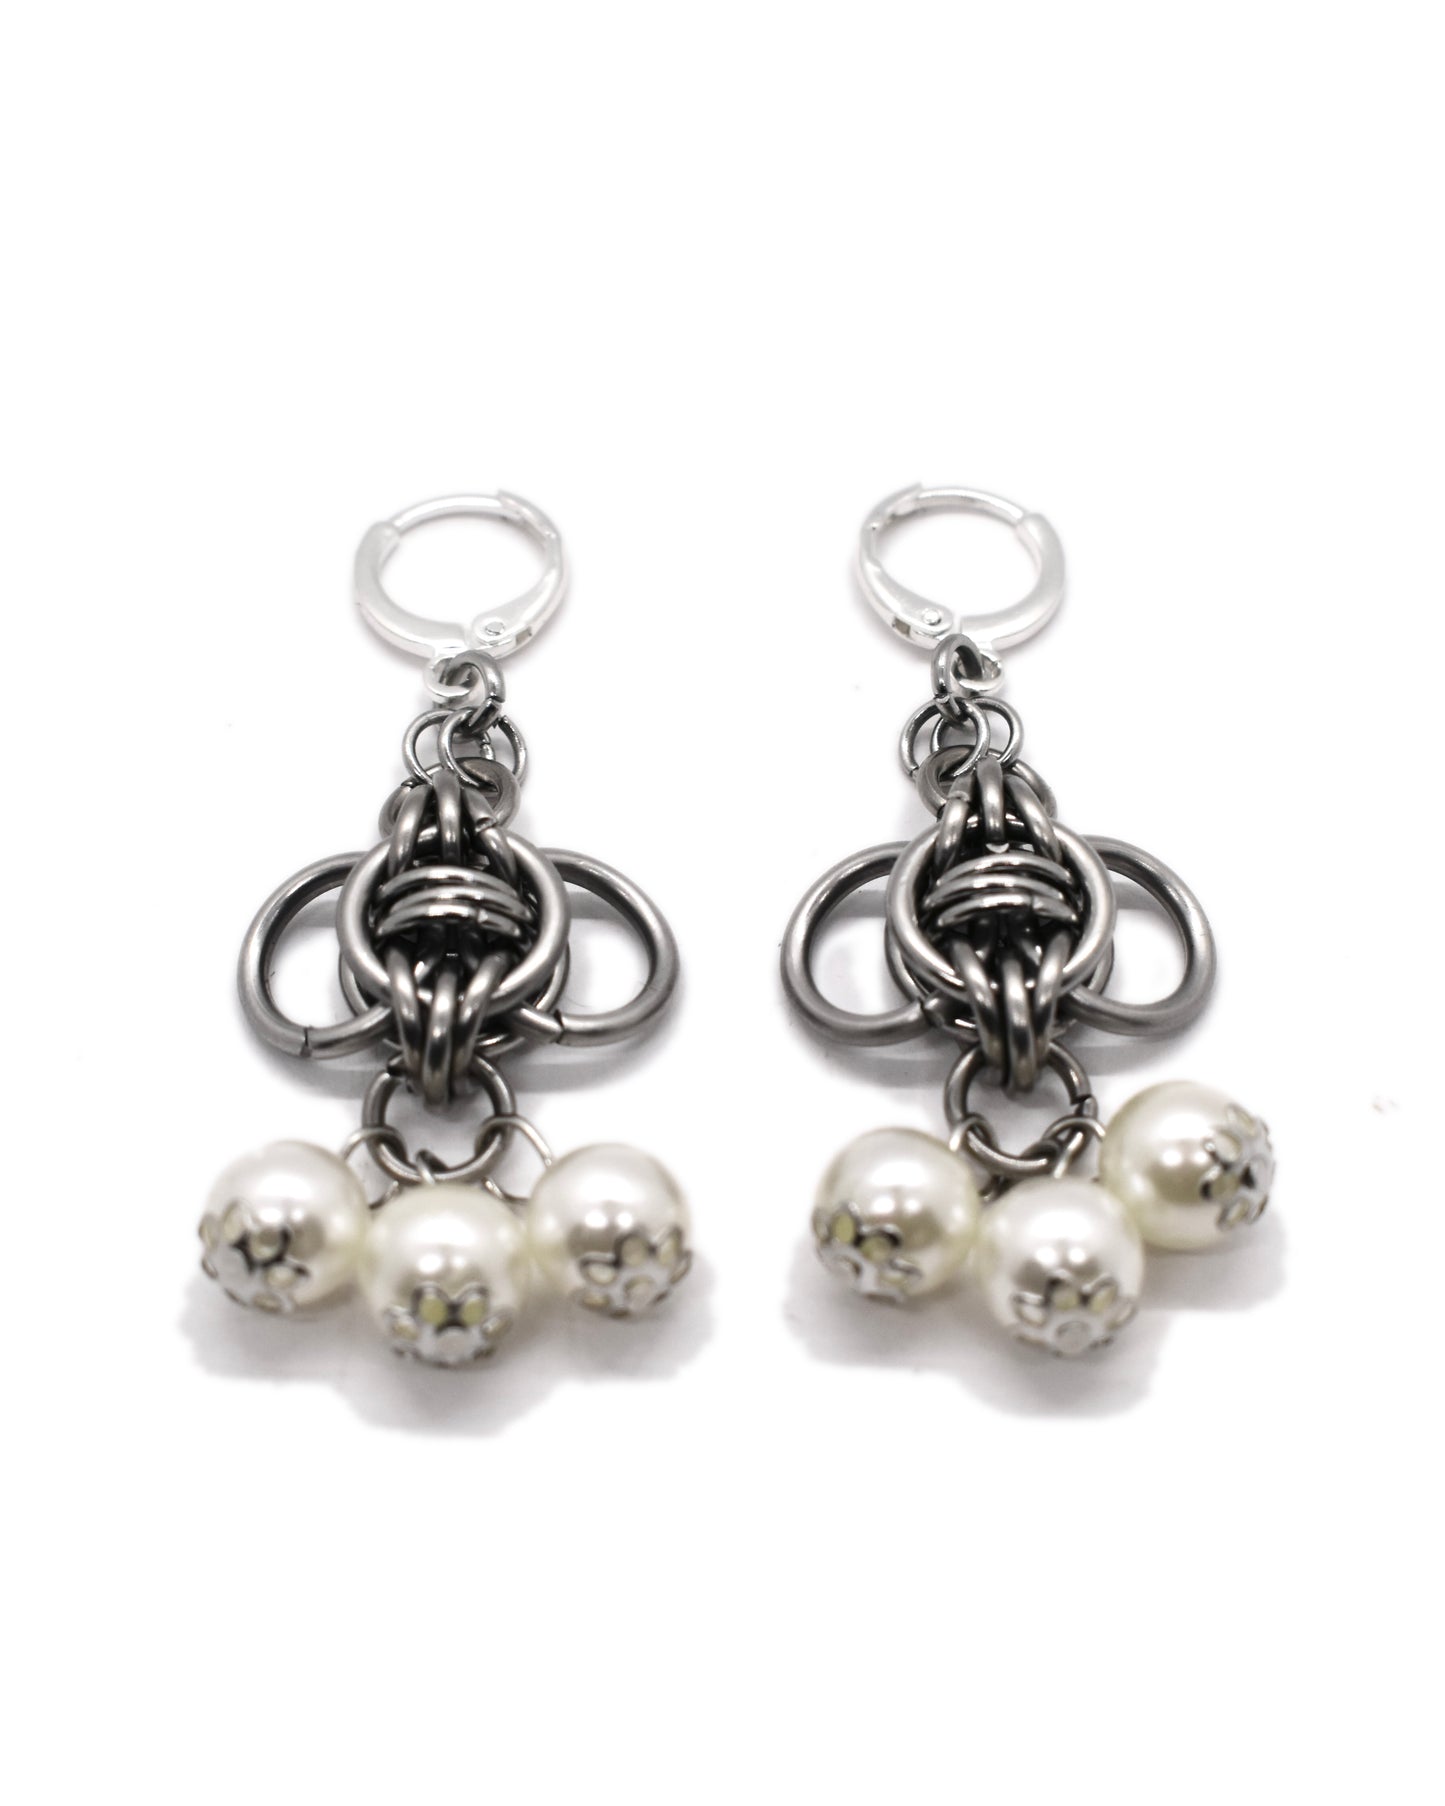 Pearl Heart Earrings